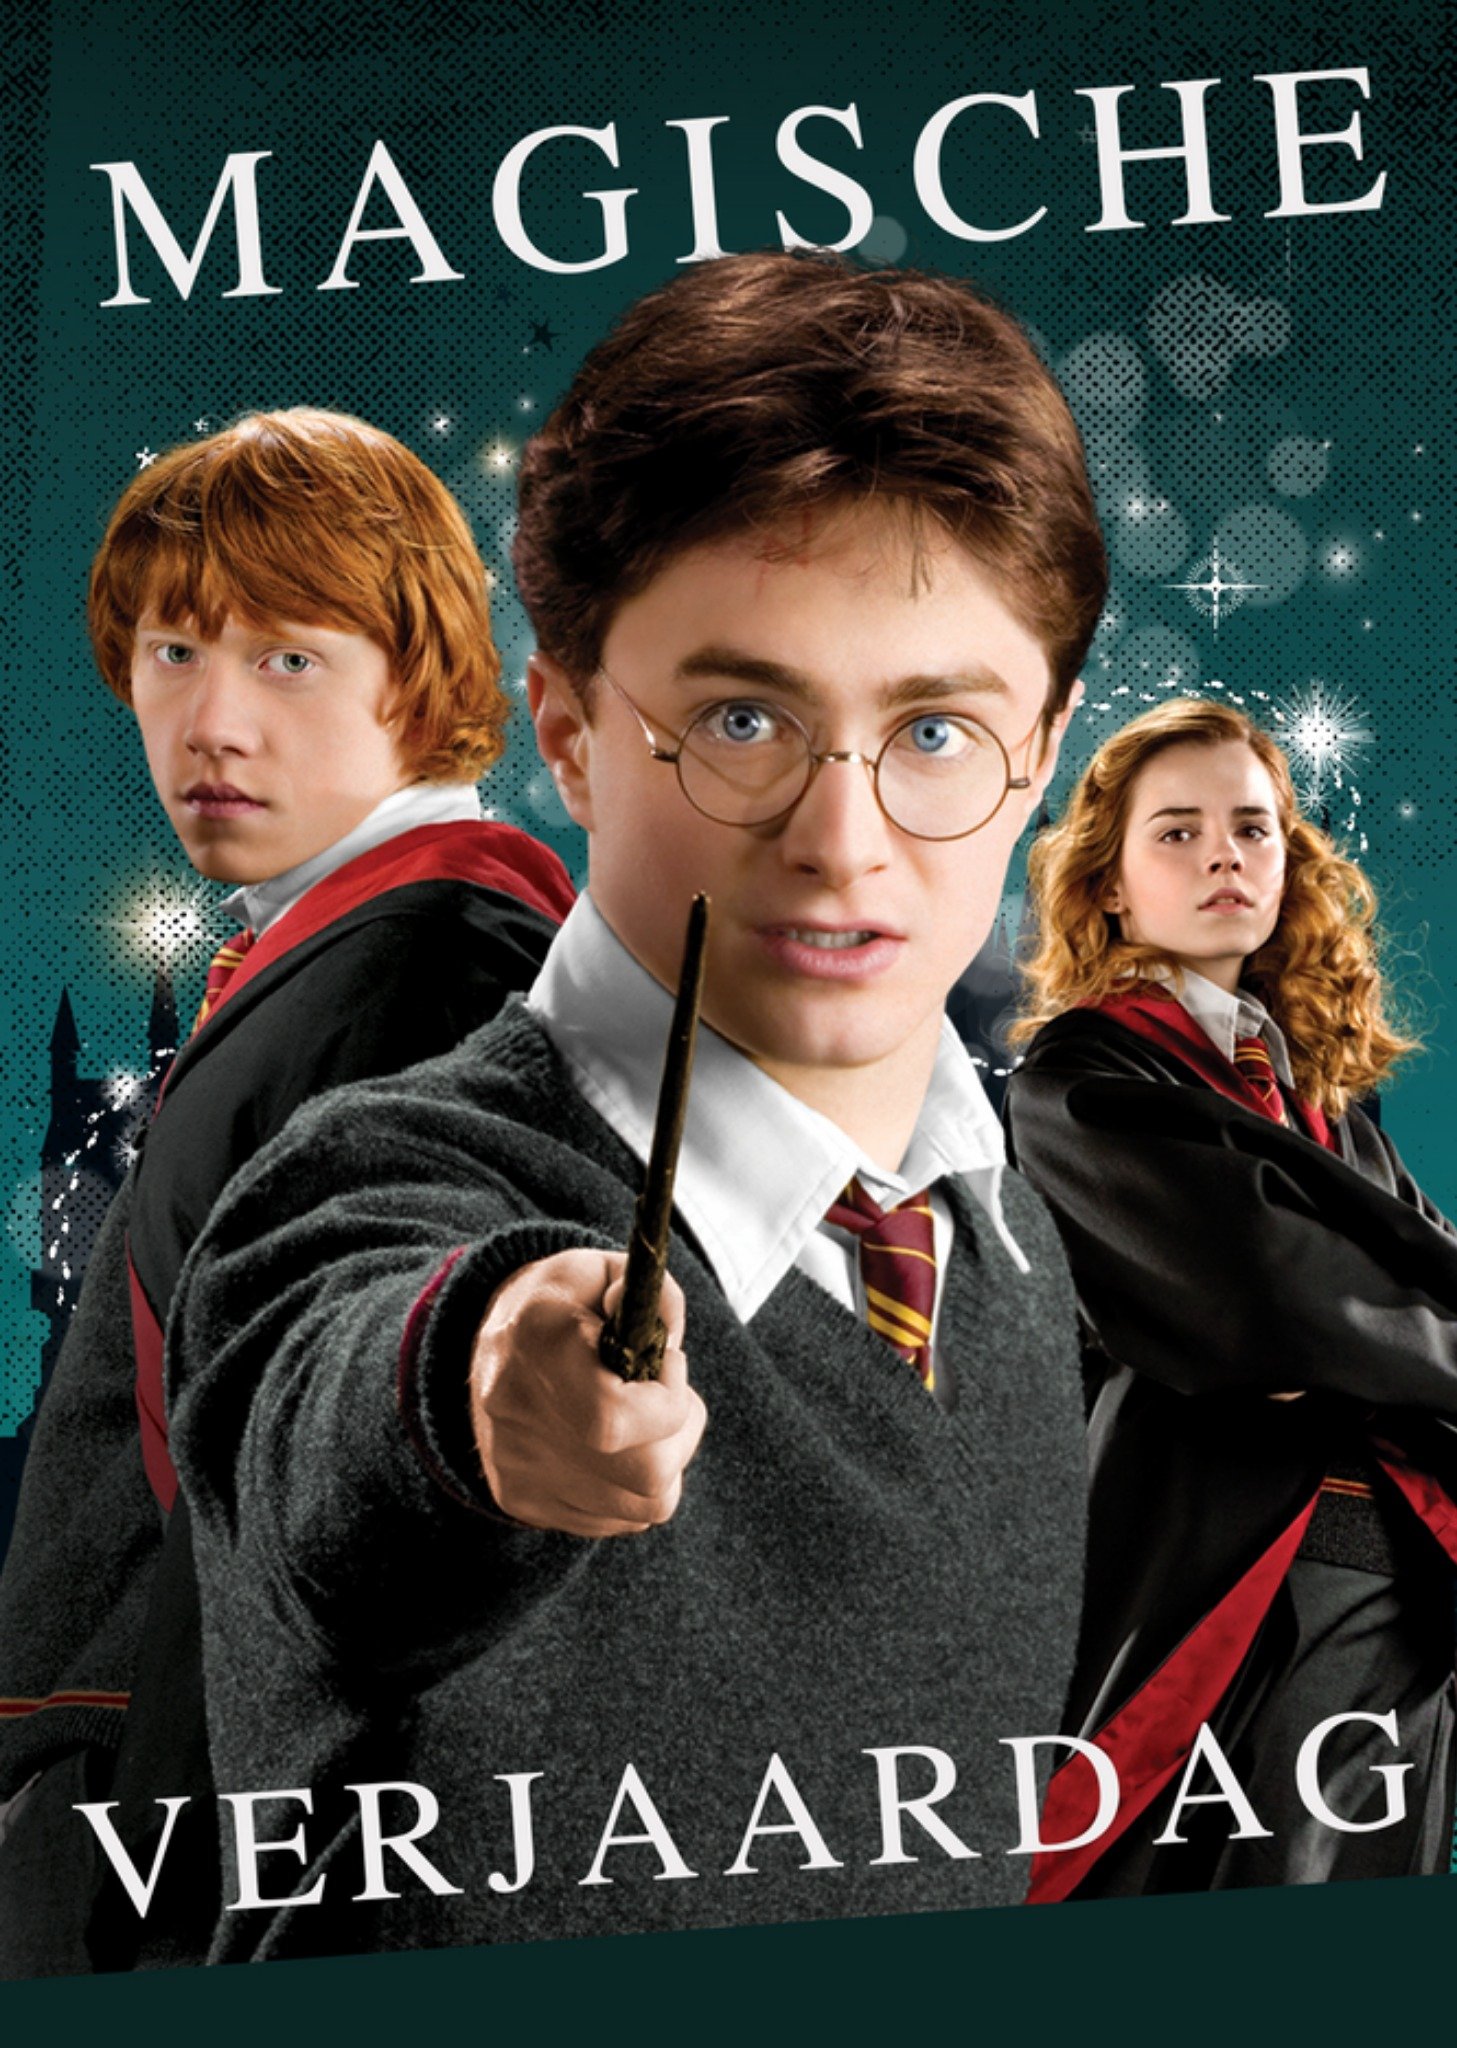 Harry Potter - Verjaardagskaart - Magische Verjaardag